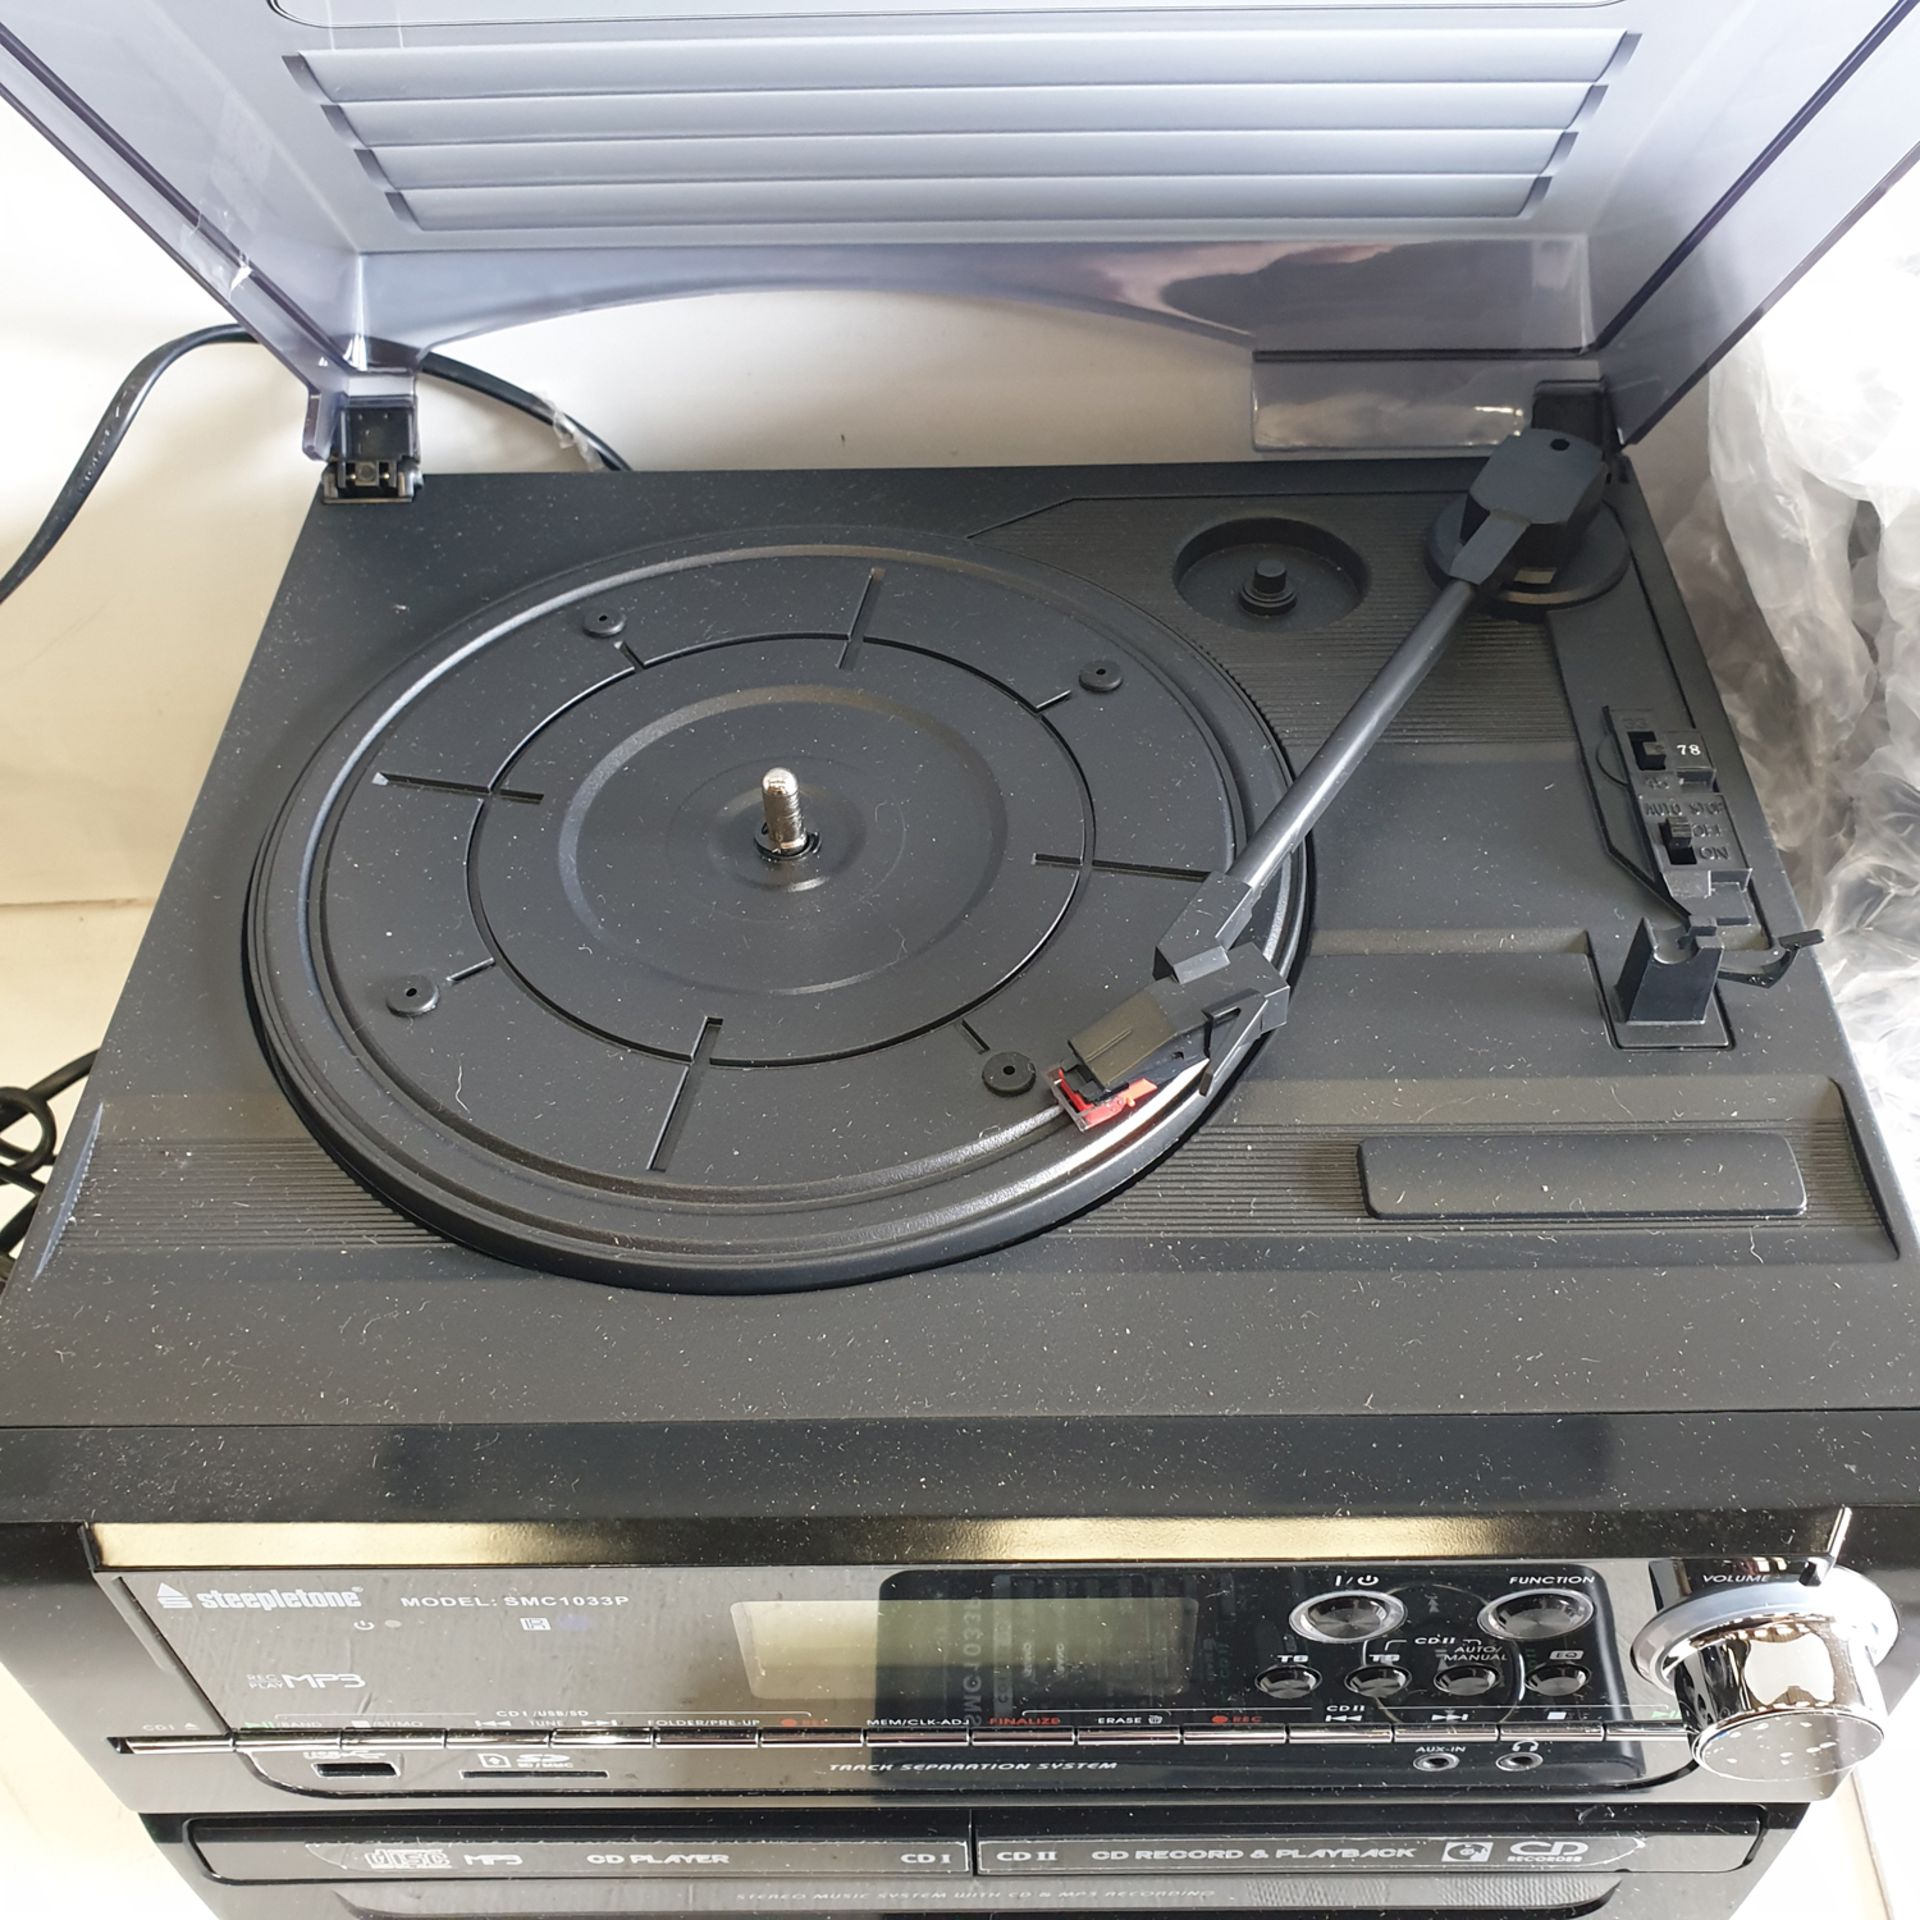 Steepletone Model SMC1033P 6-in-1 Music System. - Image 3 of 6